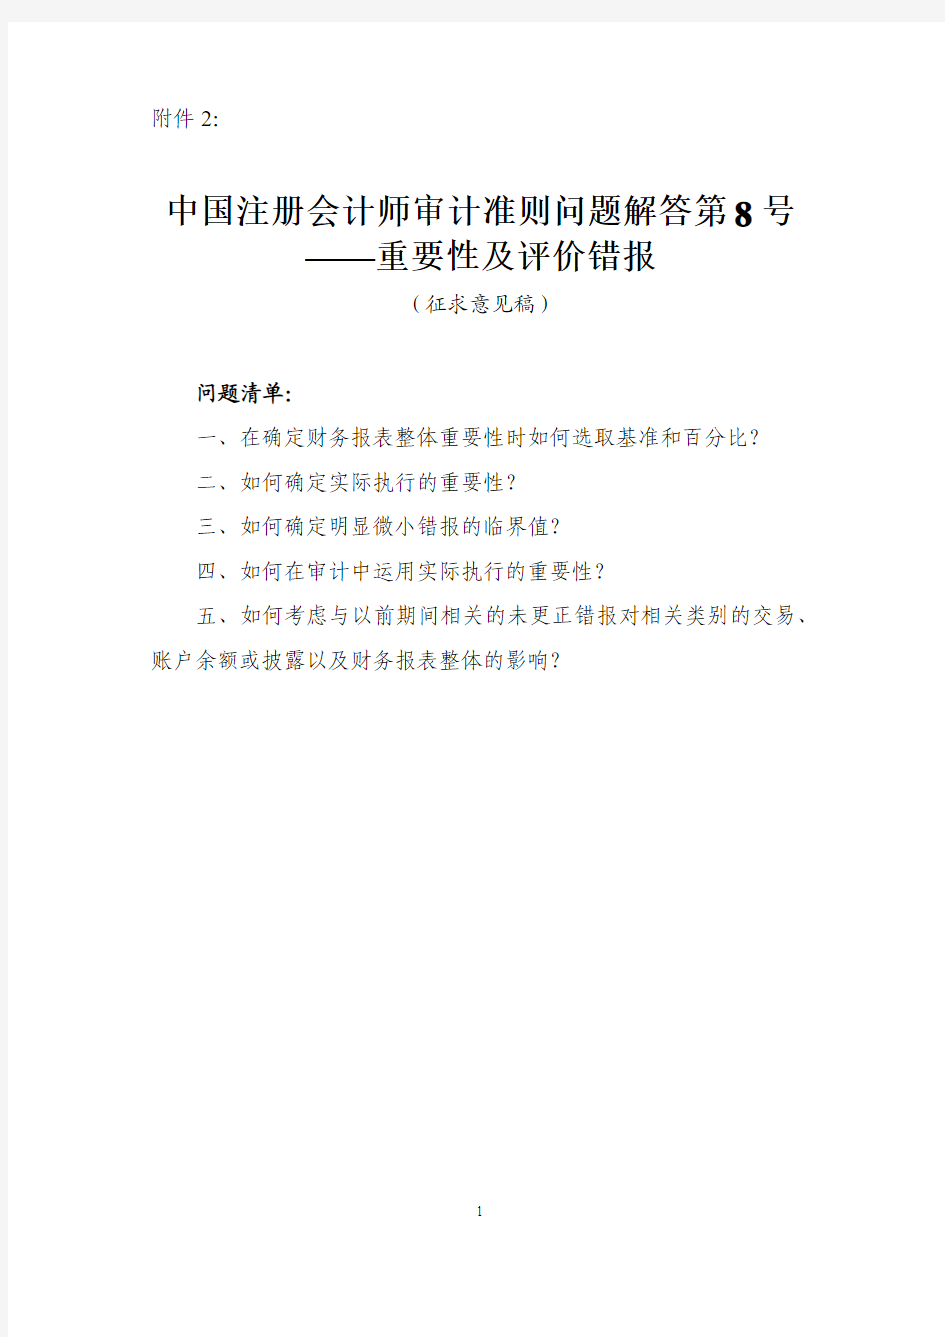 中国注册会计师审计准则问题解答第8号——重要性及评价错报(征求意见稿)